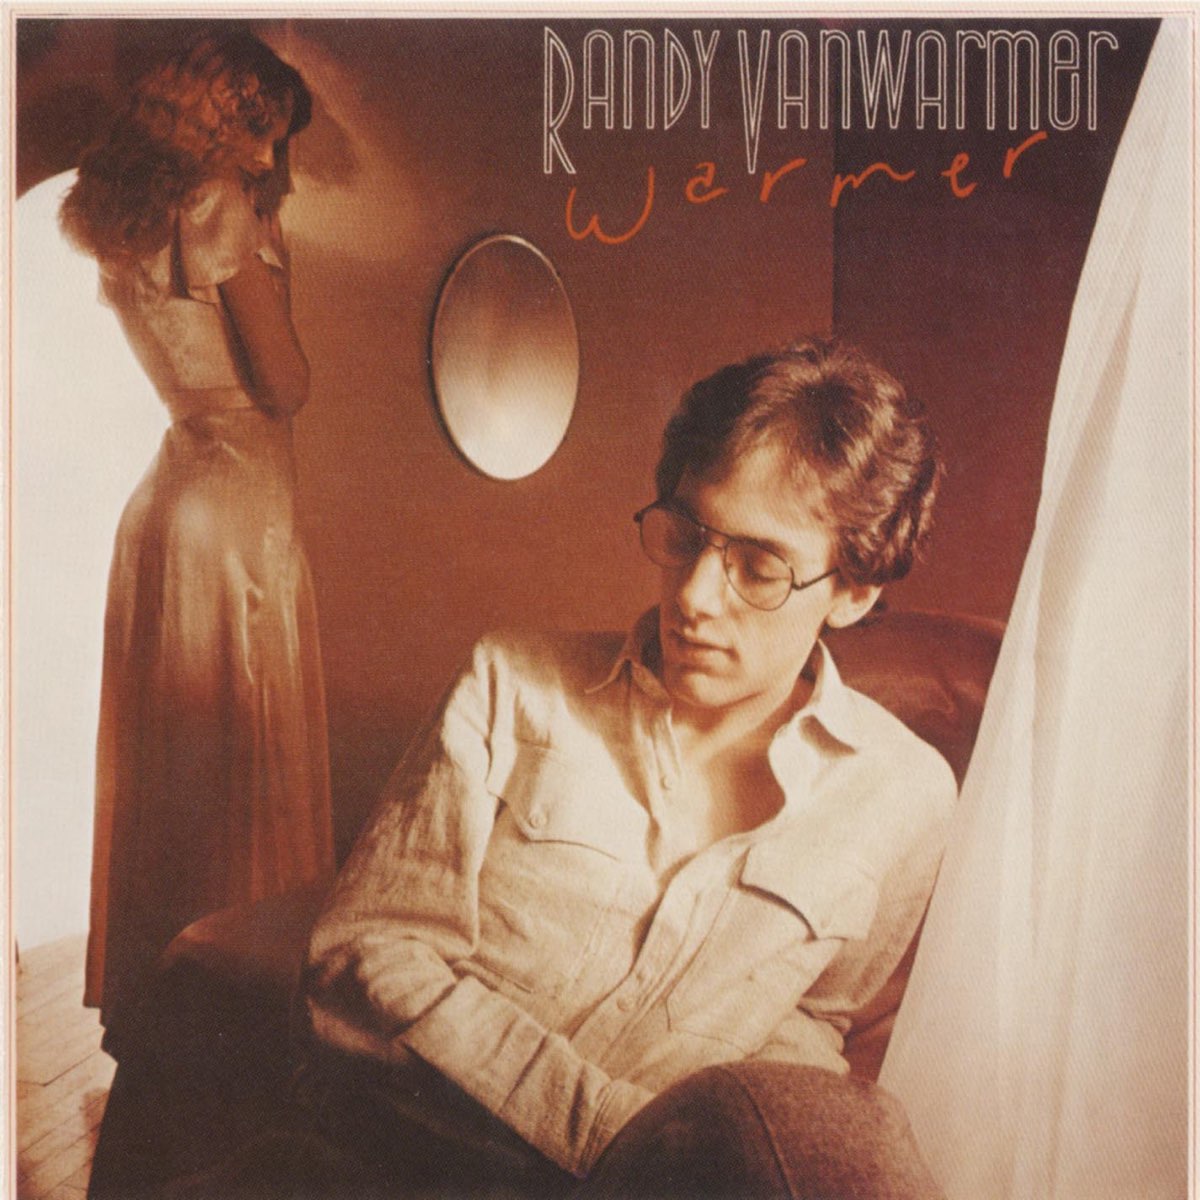 Warmer - Album by RANDY VANWARMER - Apple Music